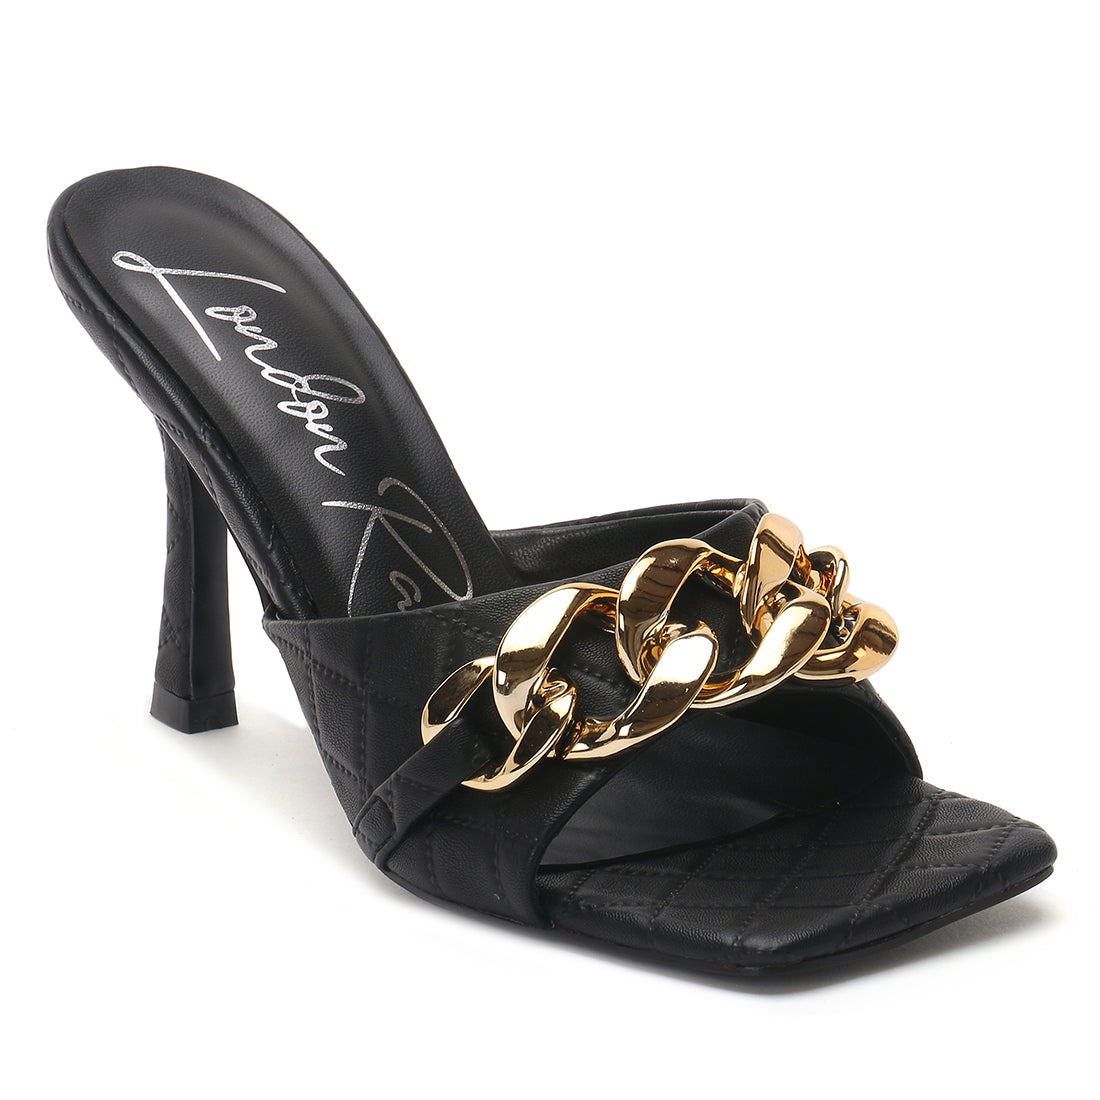 Black Quilted High Heeled Slide Sandals